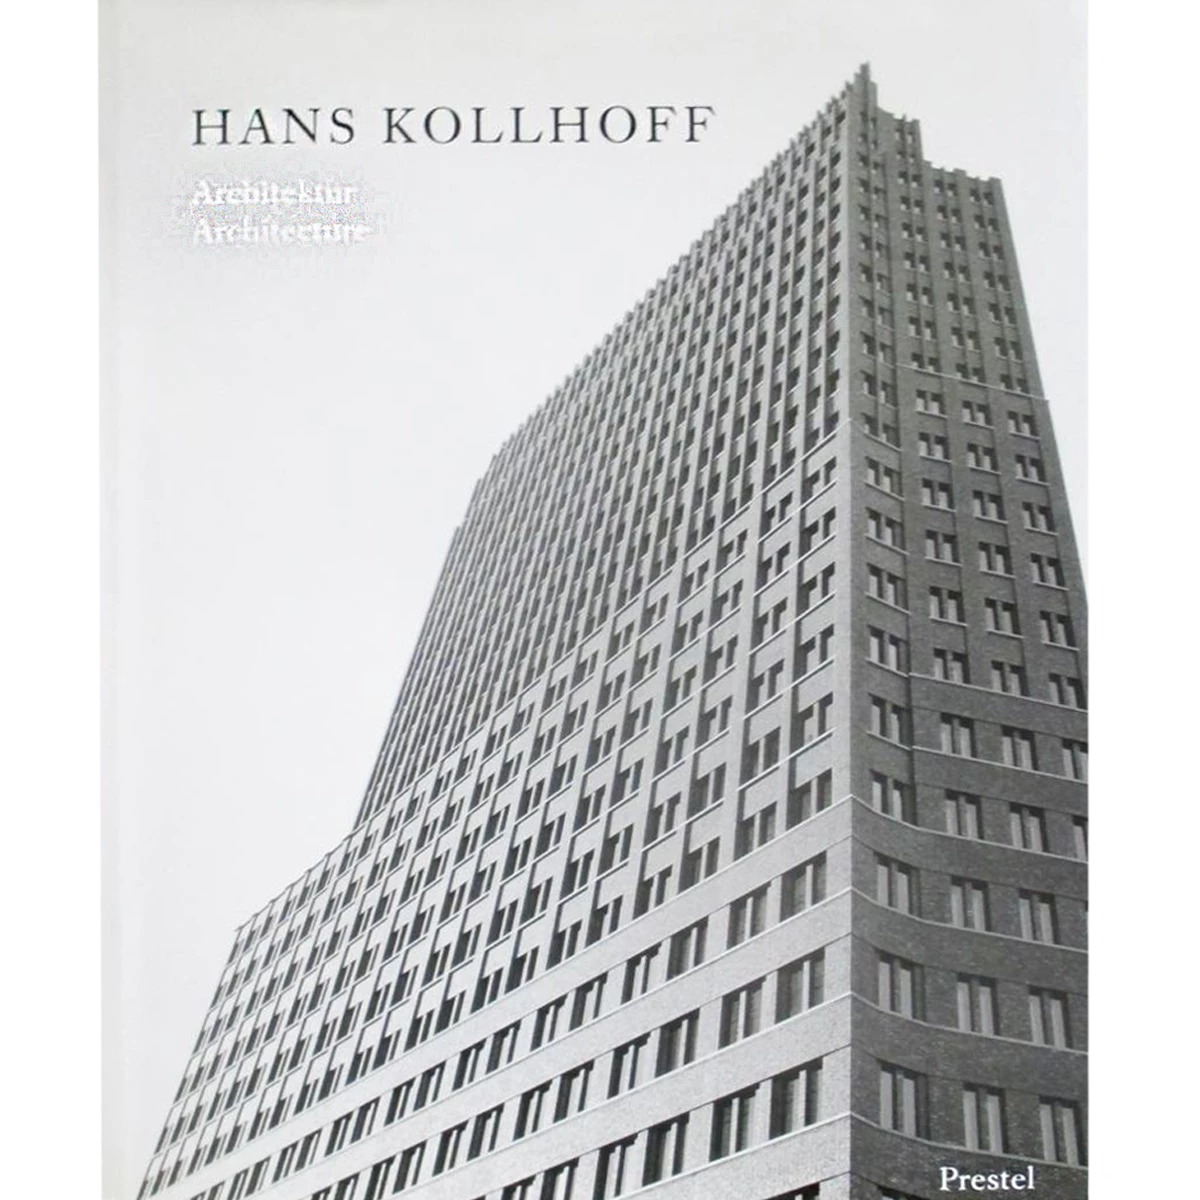 Hans Kollhoff: Architecture